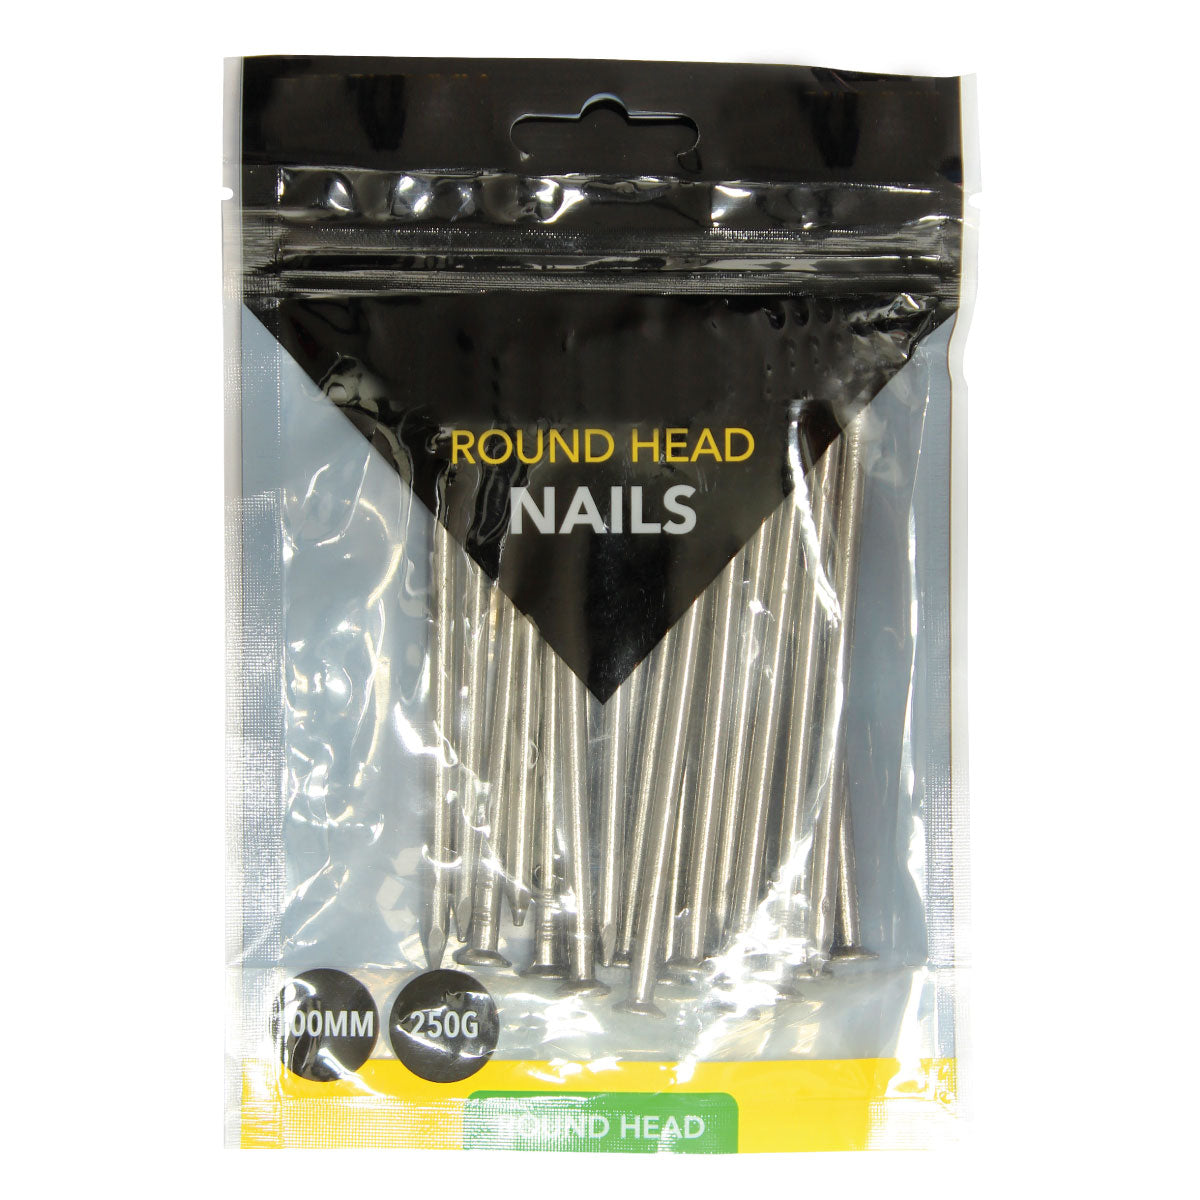 Round Head Nails 100mm